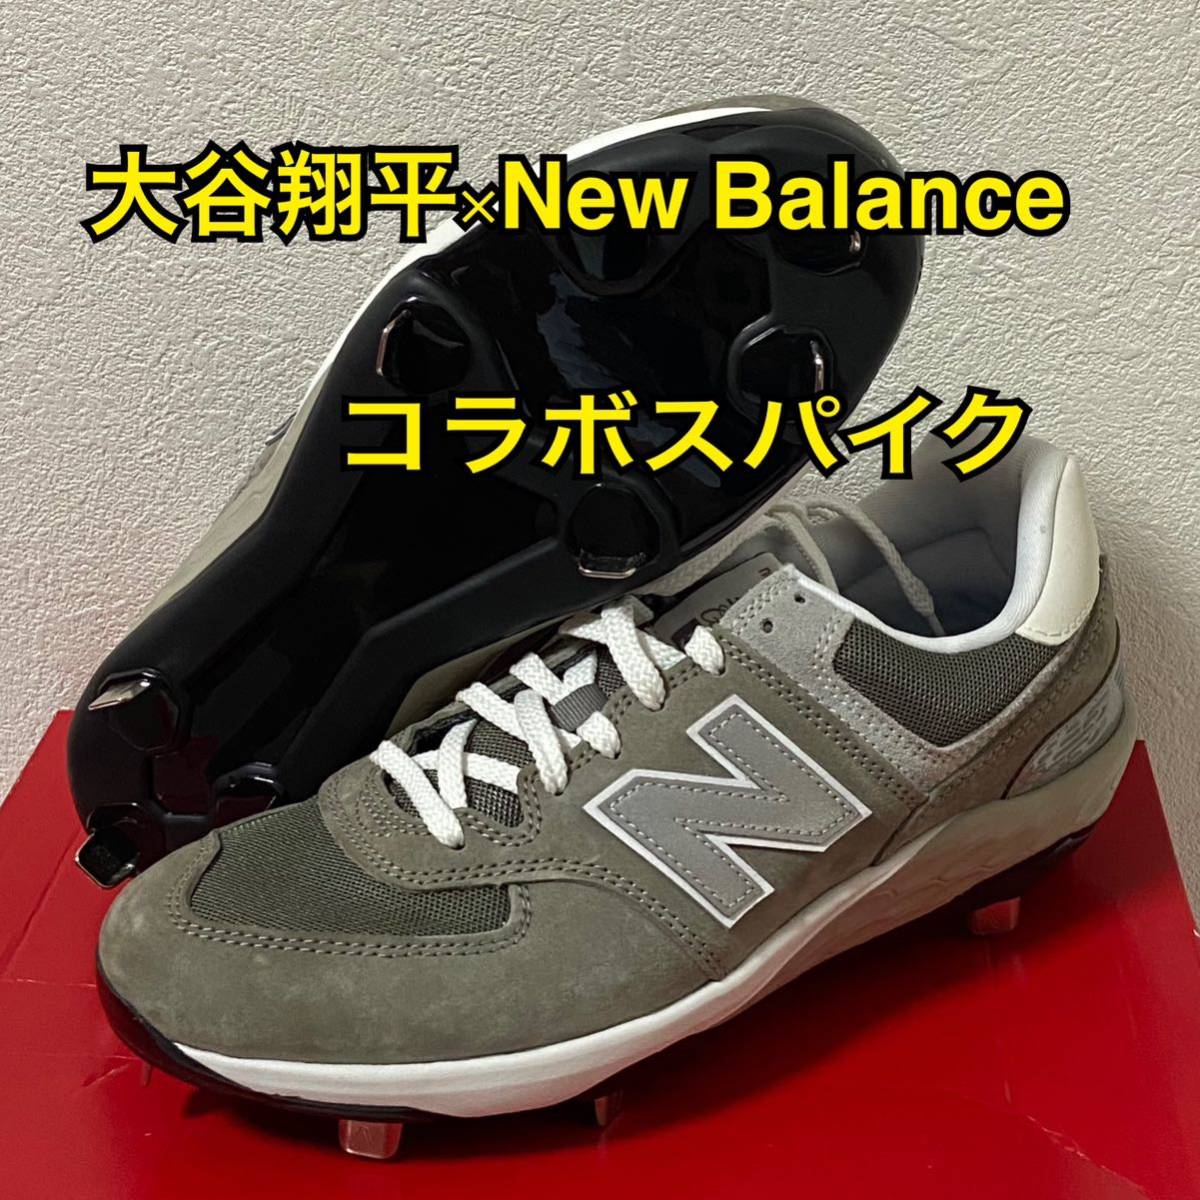 New Balance 574 大谷コラボモデル スパイク グレー 26.5cm-